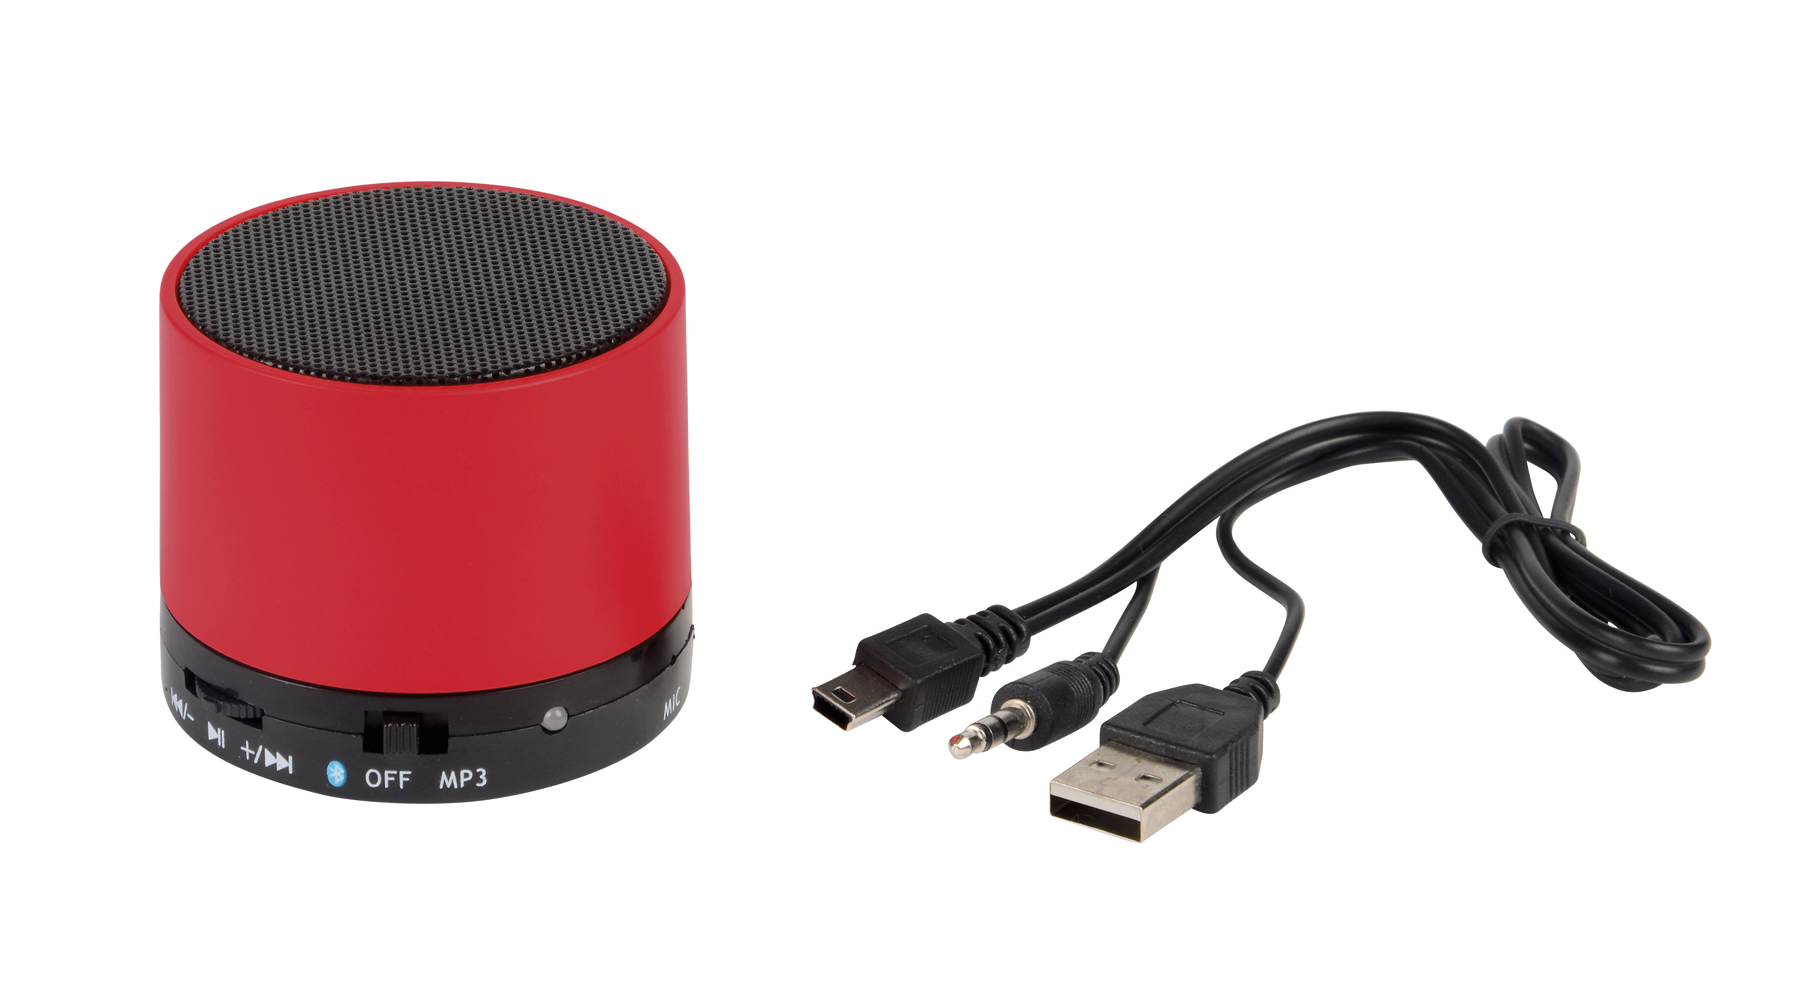 Głośnik Bluetooth NEW LIBERTY, czerwony